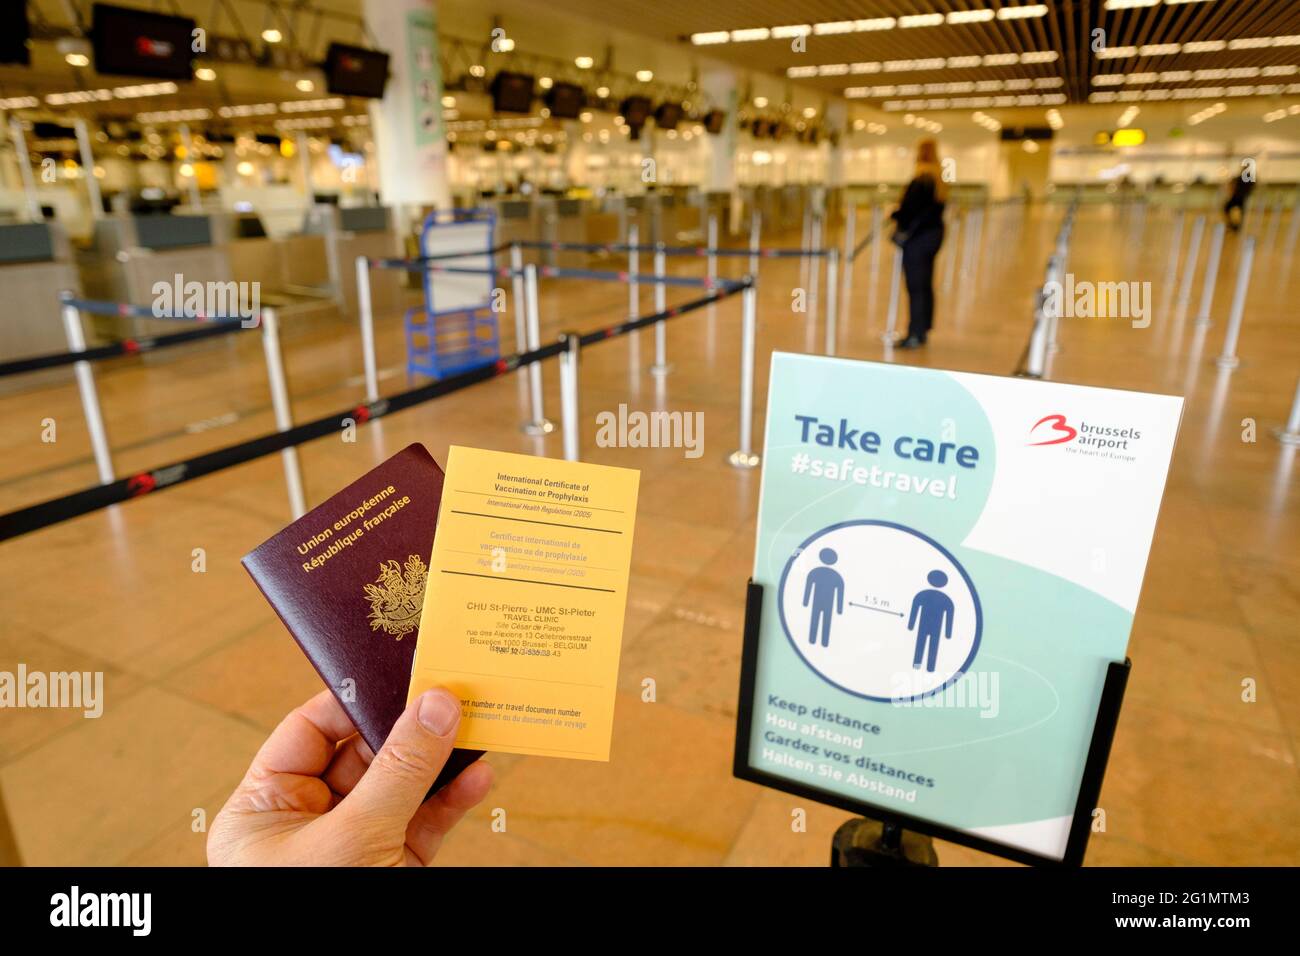 Belgien, Brüssel, Flughafen Zaventem, 26. Februar 2021: Französischer Reisender mit seinem Reisepass und einem Internationalen Impfzertifikat oder Prophylax Stockfoto